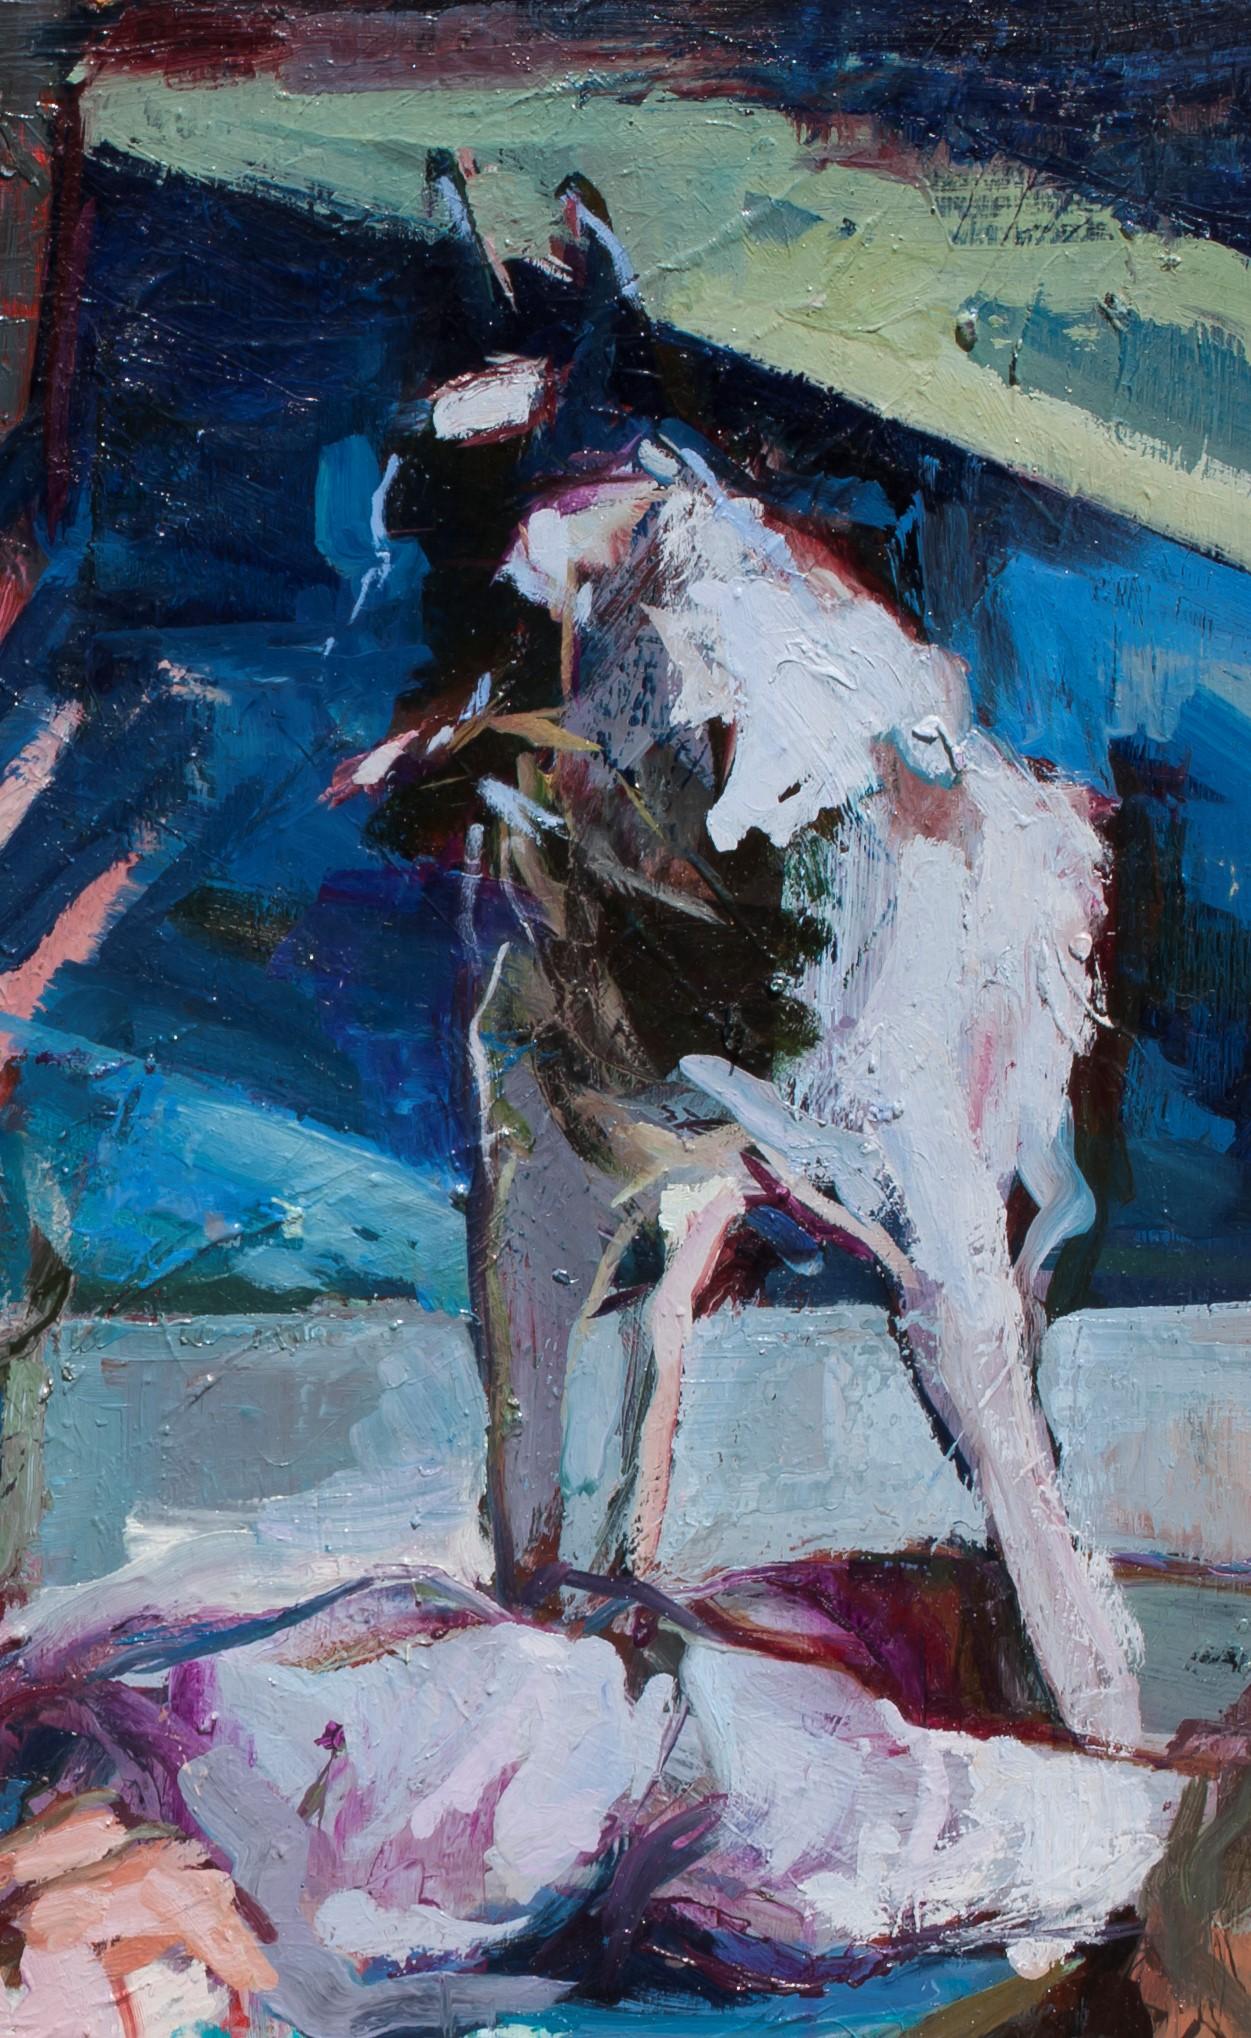 Eyes of Shivers - Cinema-inspiriertes Ölgemälde mit zwei sich umarmenden Menschen und einem Hund (Blau), Animal Painting, von Georgia Hinaris